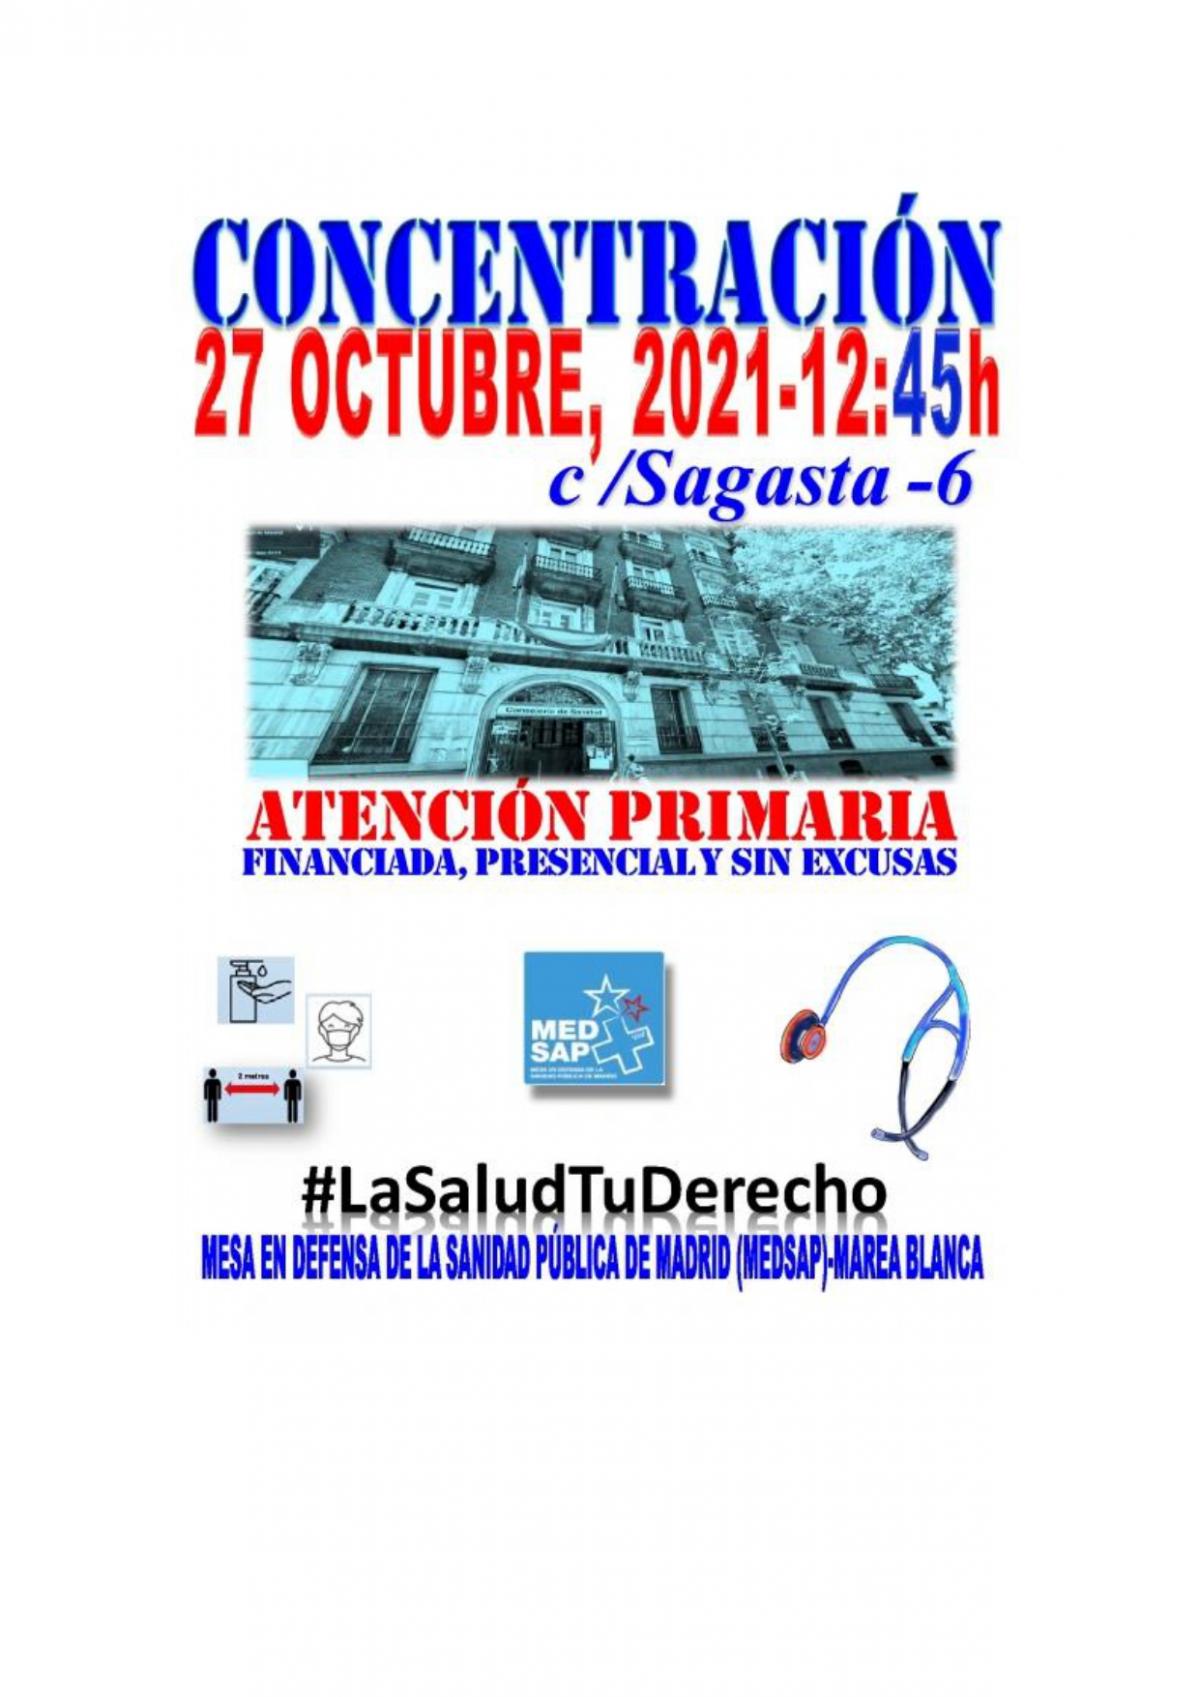 Concentración miércoles 27 de octubre en la Calle Sagasta, 6